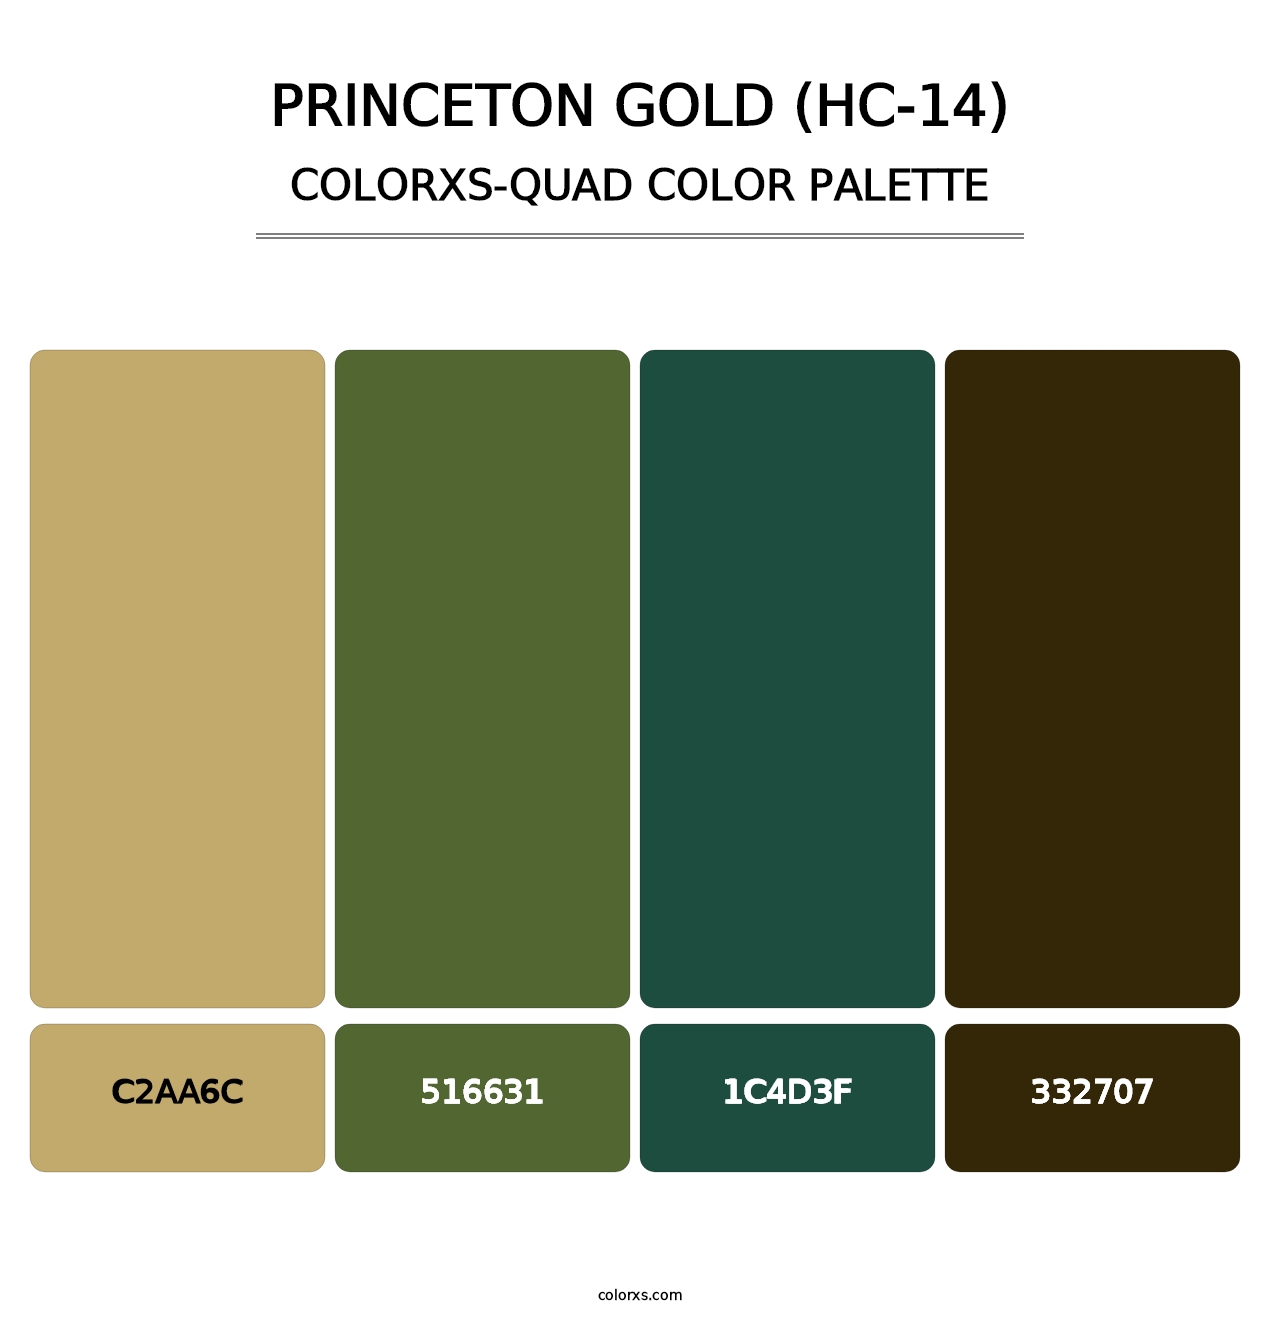 Princeton Gold (HC-14) - Colorxs Quad Palette